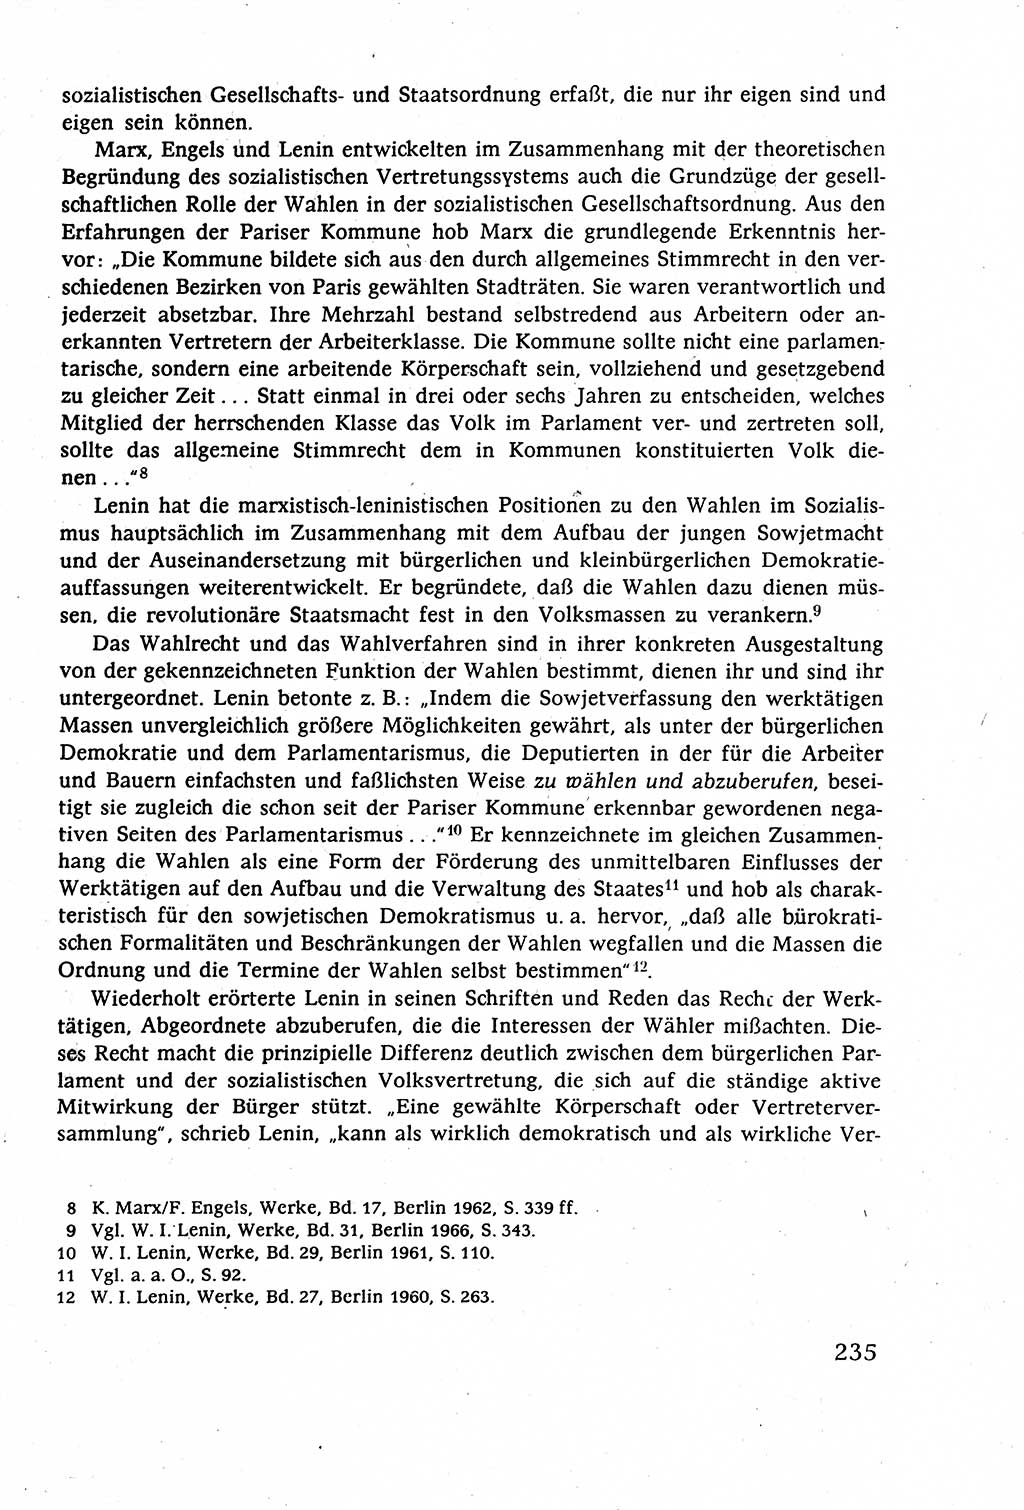 Staatsrecht der DDR (Deutsche Demokratische Republik), Lehrbuch 1977, Seite 235 (St.-R. DDR Lb. 1977, S. 235)